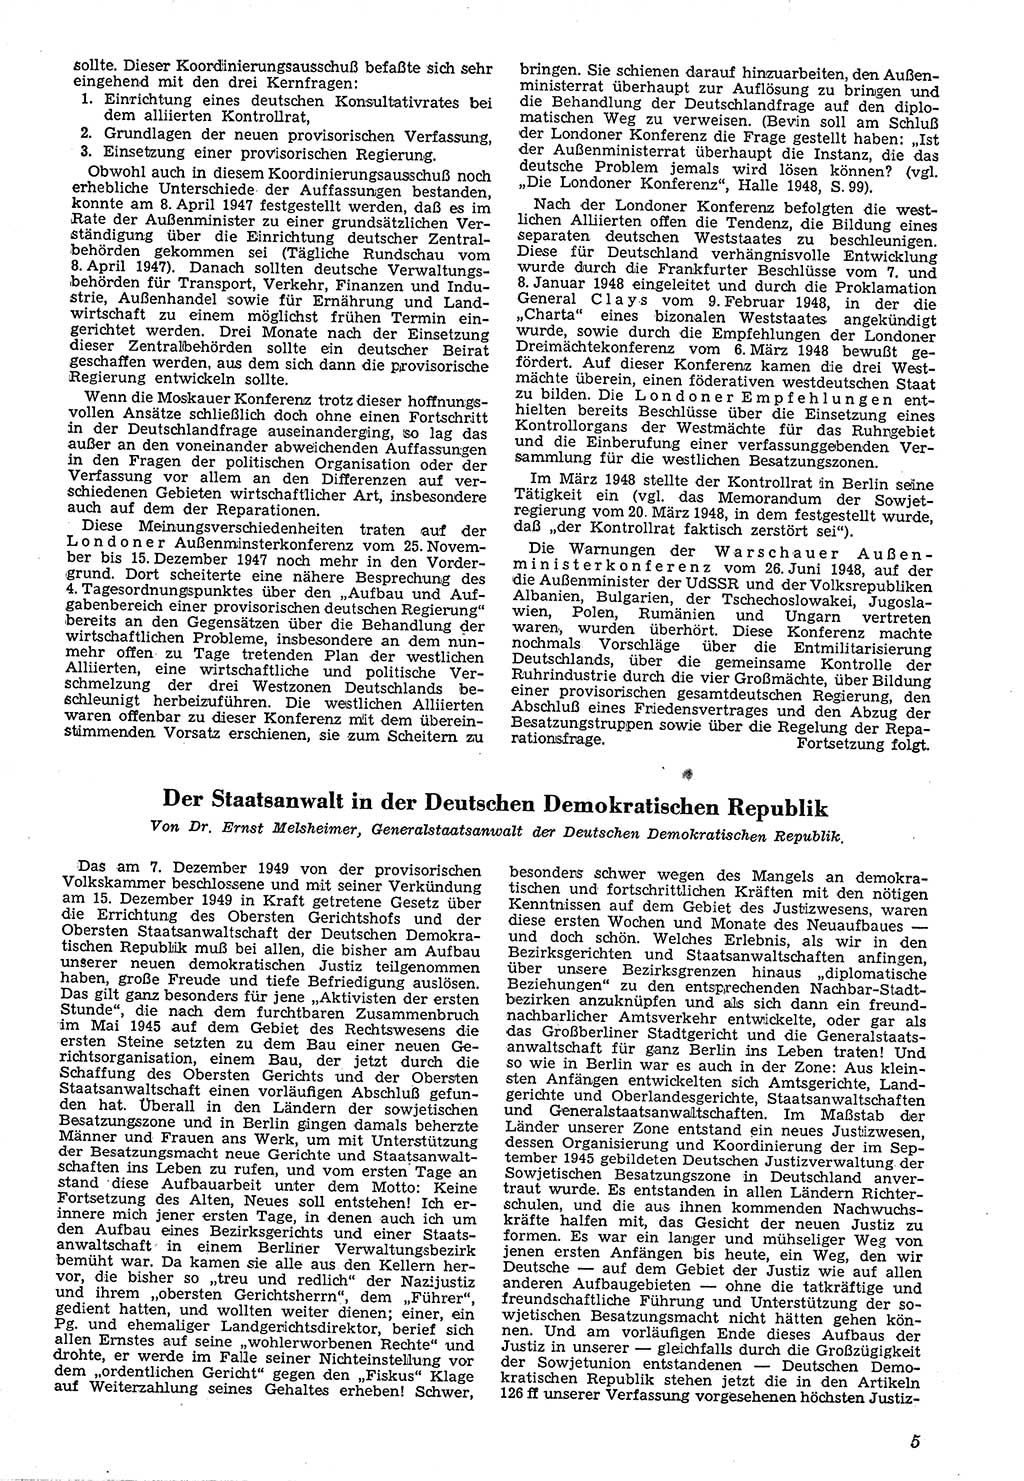 Neue Justiz (NJ), Zeitschrift für Recht und Rechtswissenschaft [Deutsche Demokratische Republik (DDR)], 4. Jahrgang 1950, Seite 5 (NJ DDR 1950, S. 5)